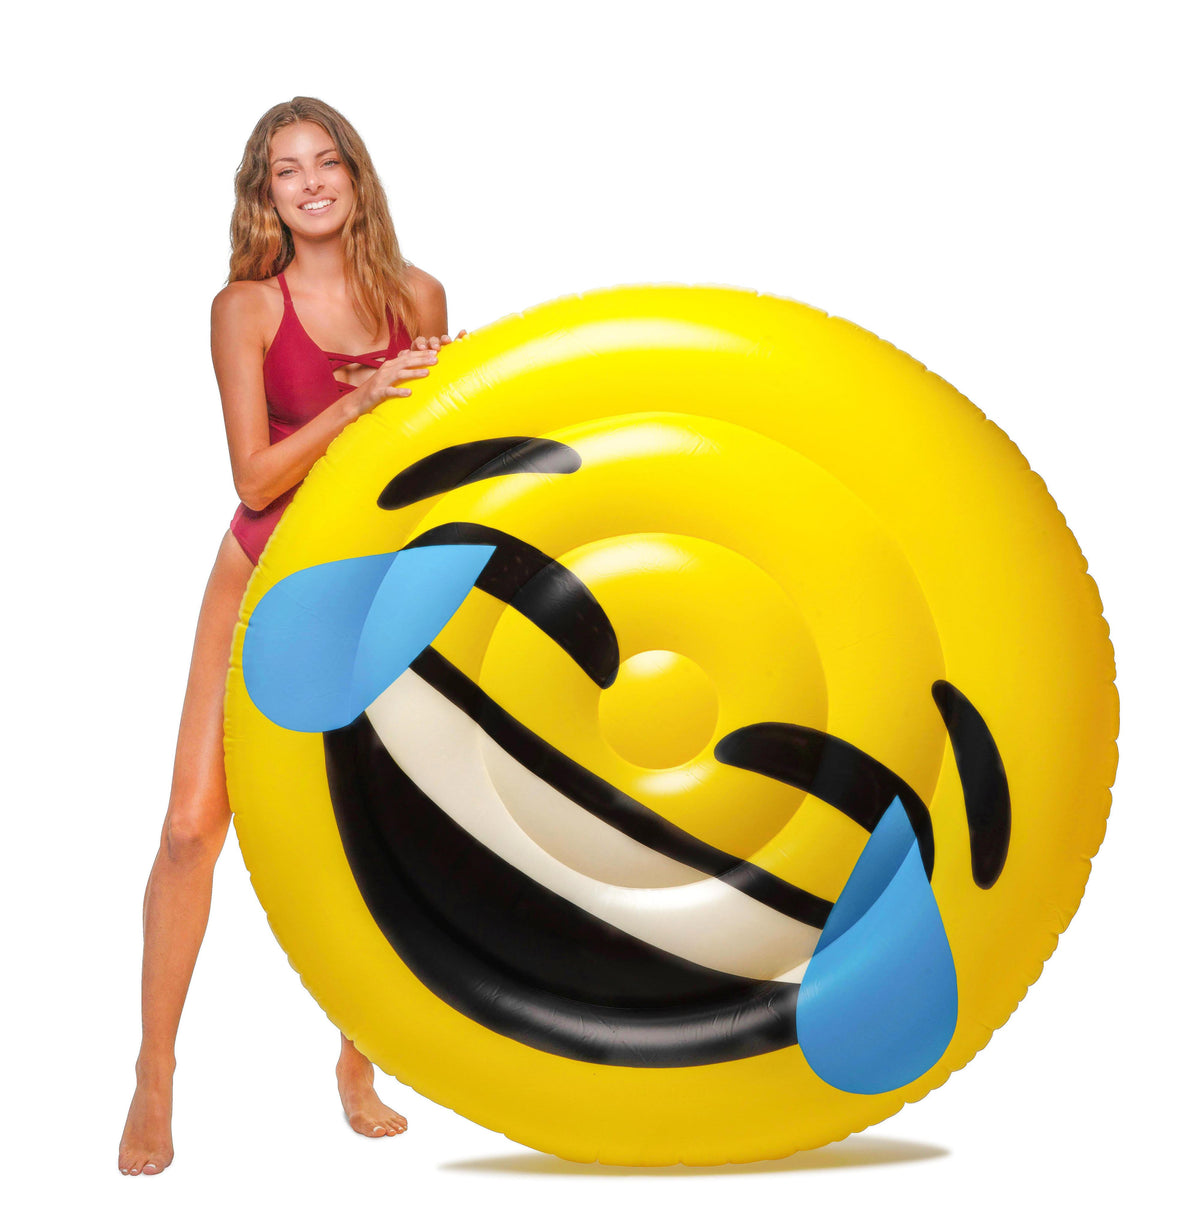 Emoji Buy 2 and get 1 for free - Floatie Kings